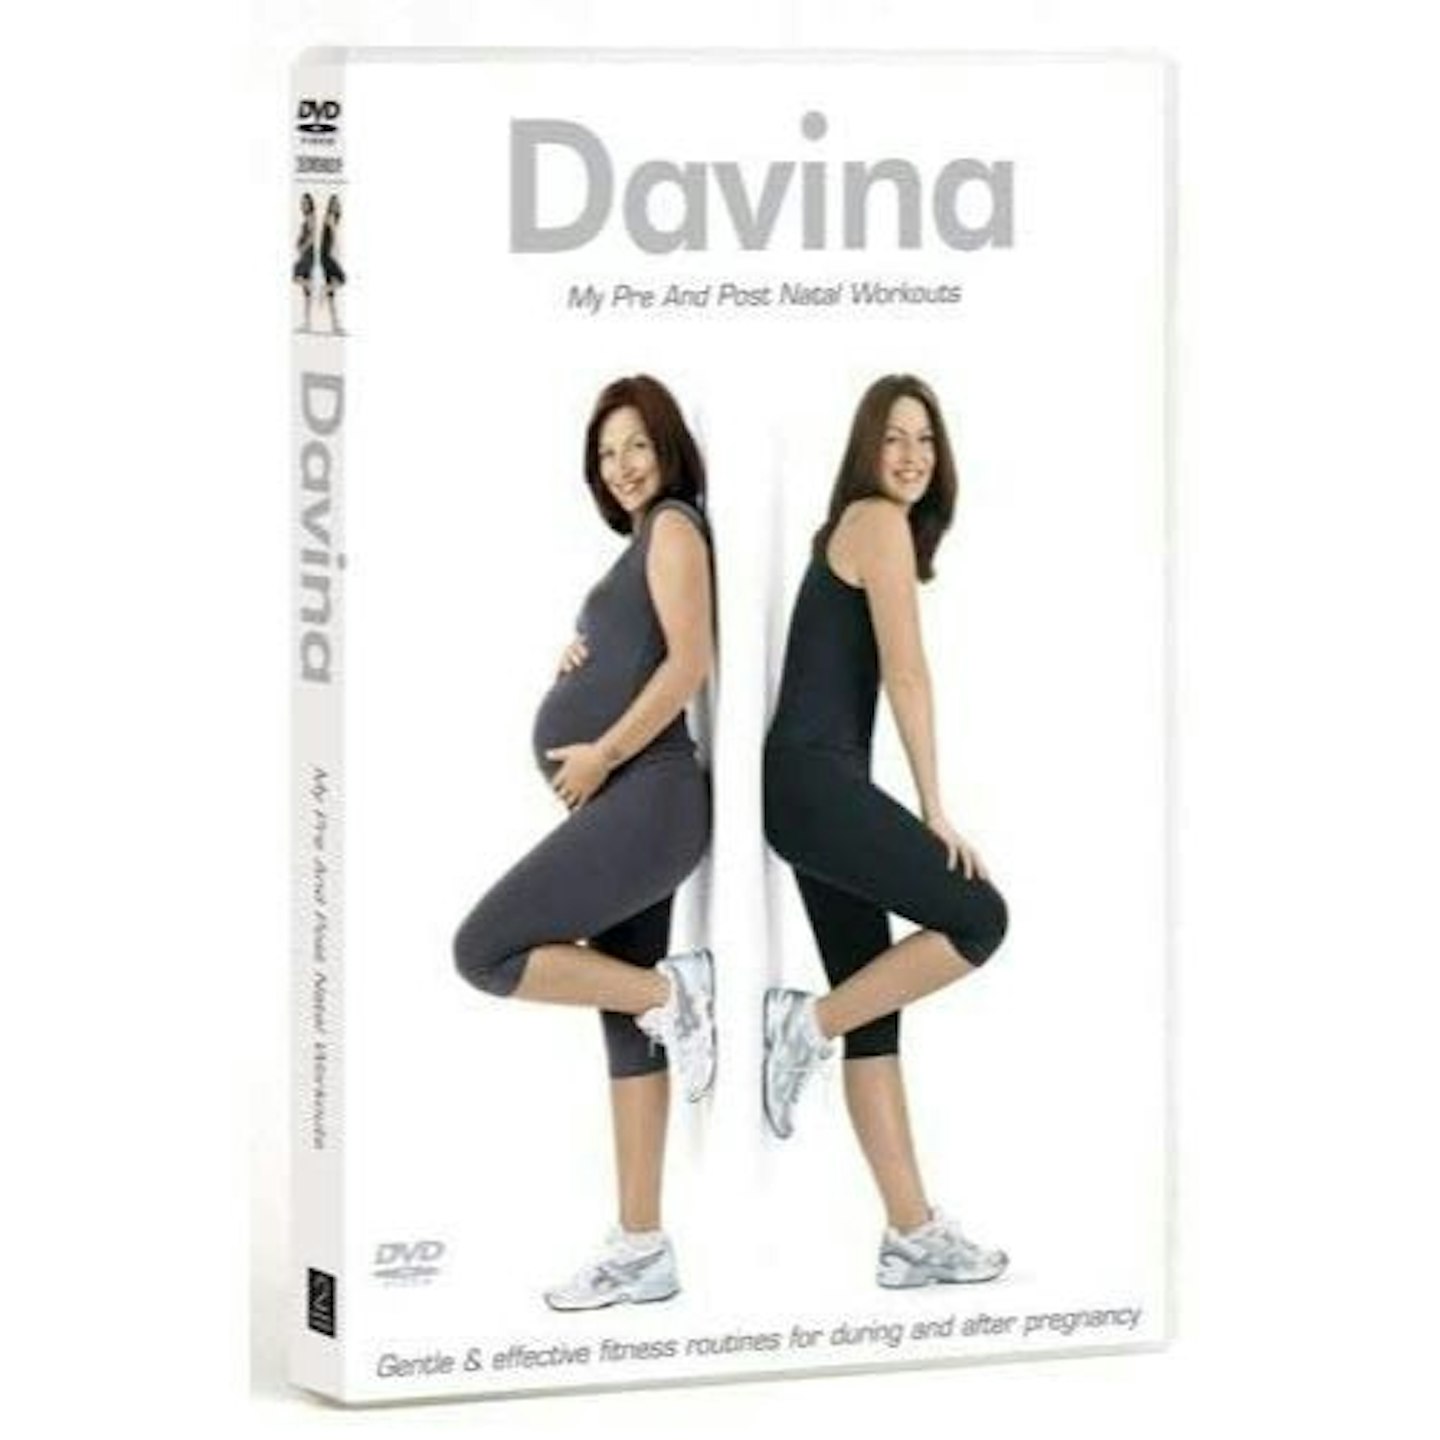 Davina - My Pre & Post Natal Workouts